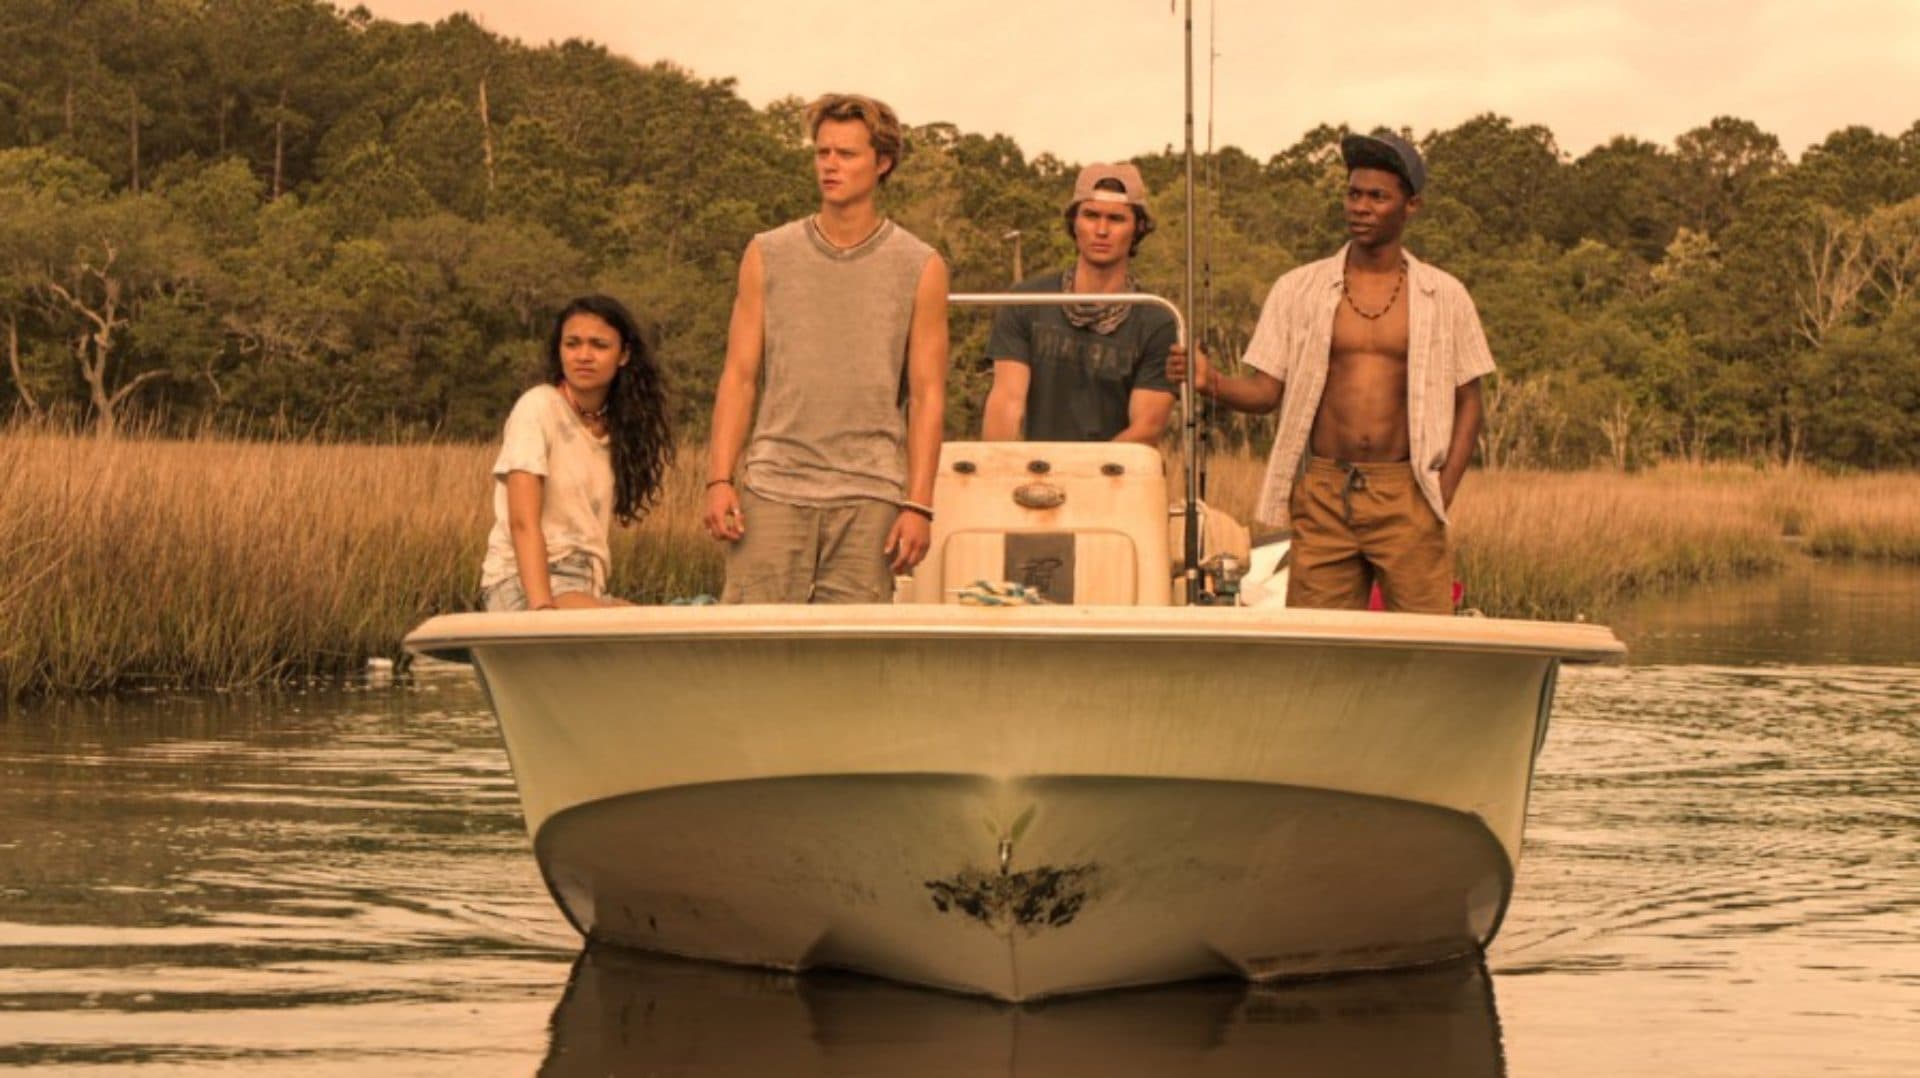 Outer Banks: así es la temporada 2 del drama adolescente en Netflix